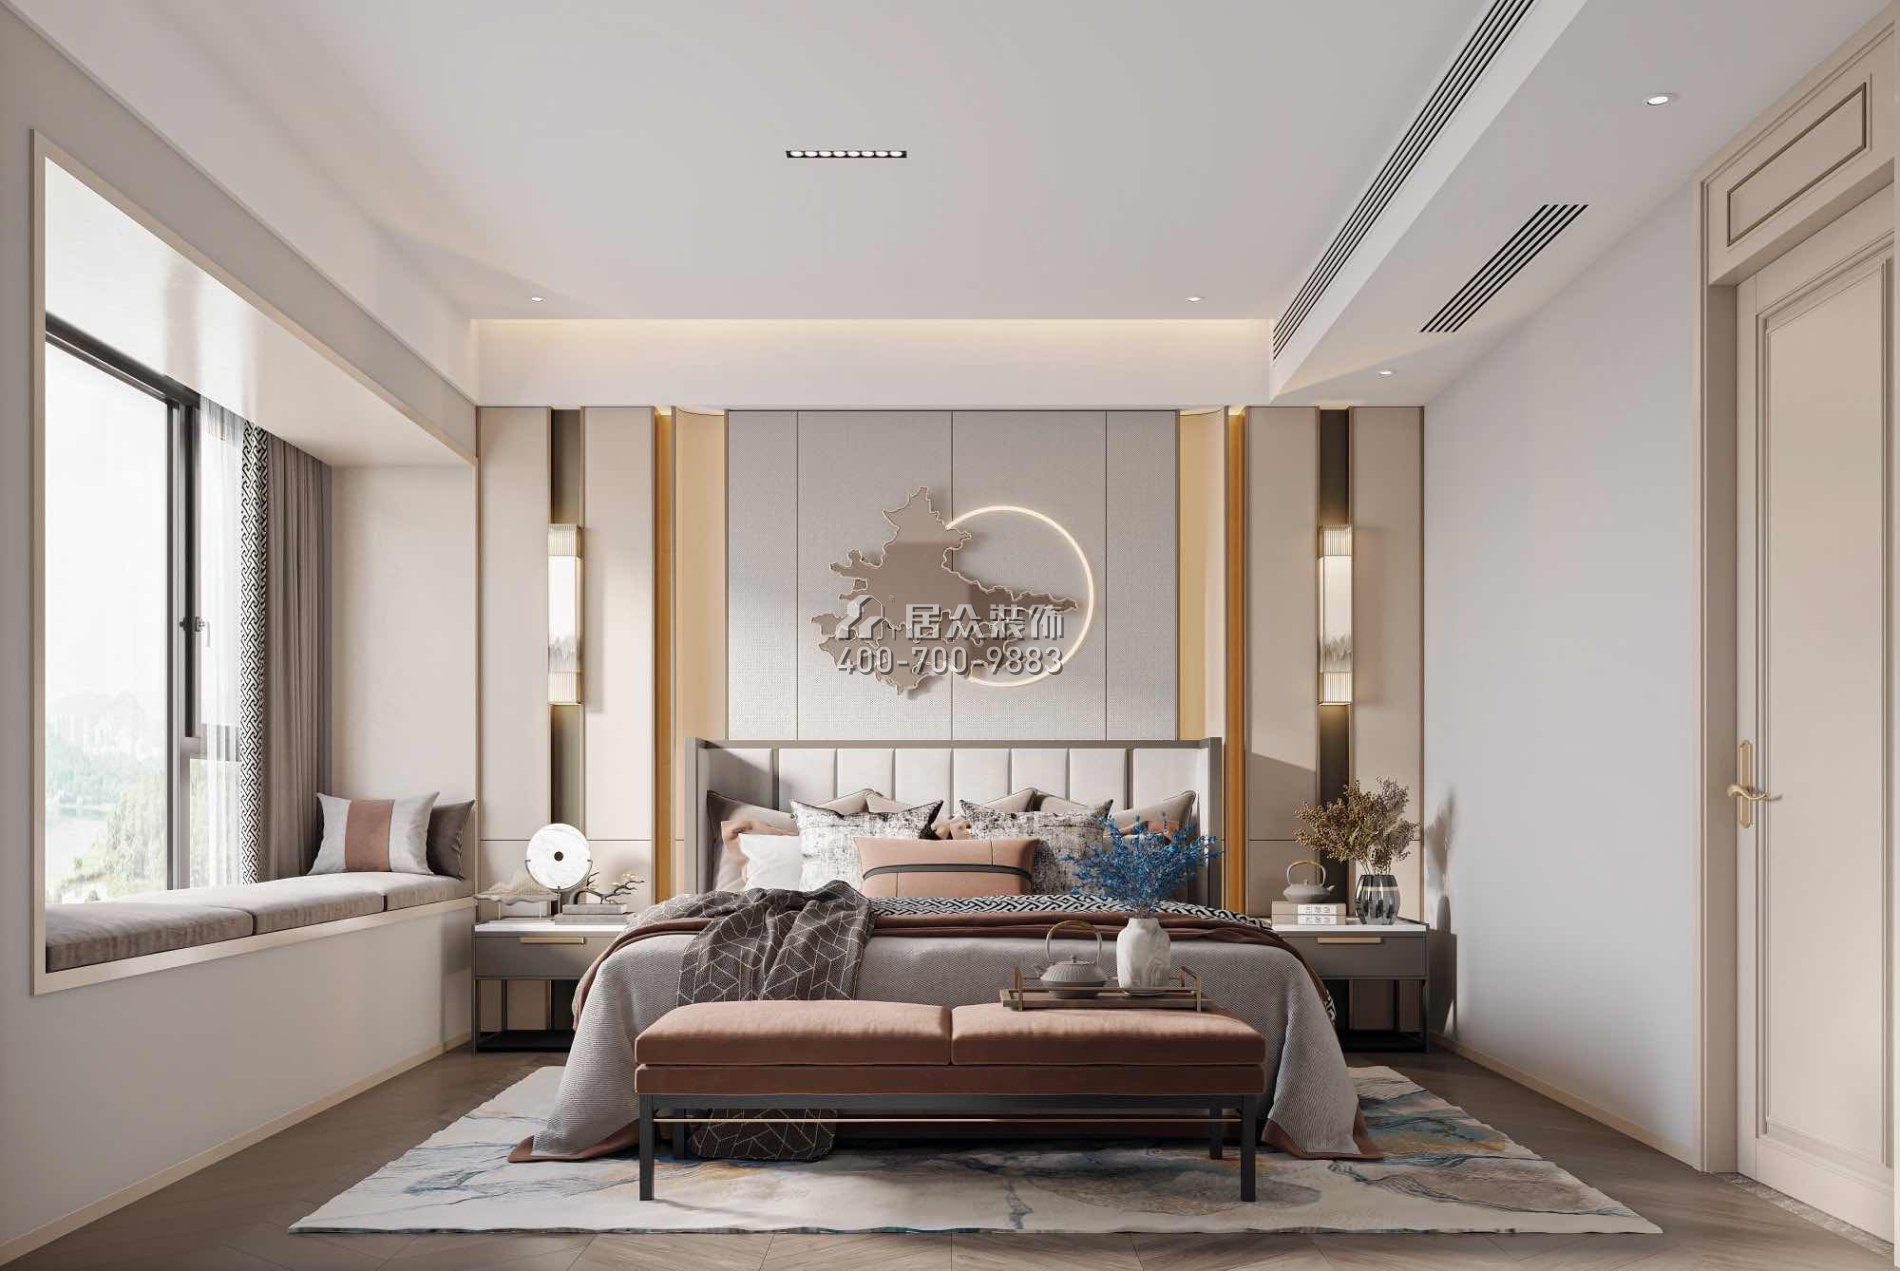 恒裕水墨兰亭350平方米中式风格复式户型卧室装修效果图